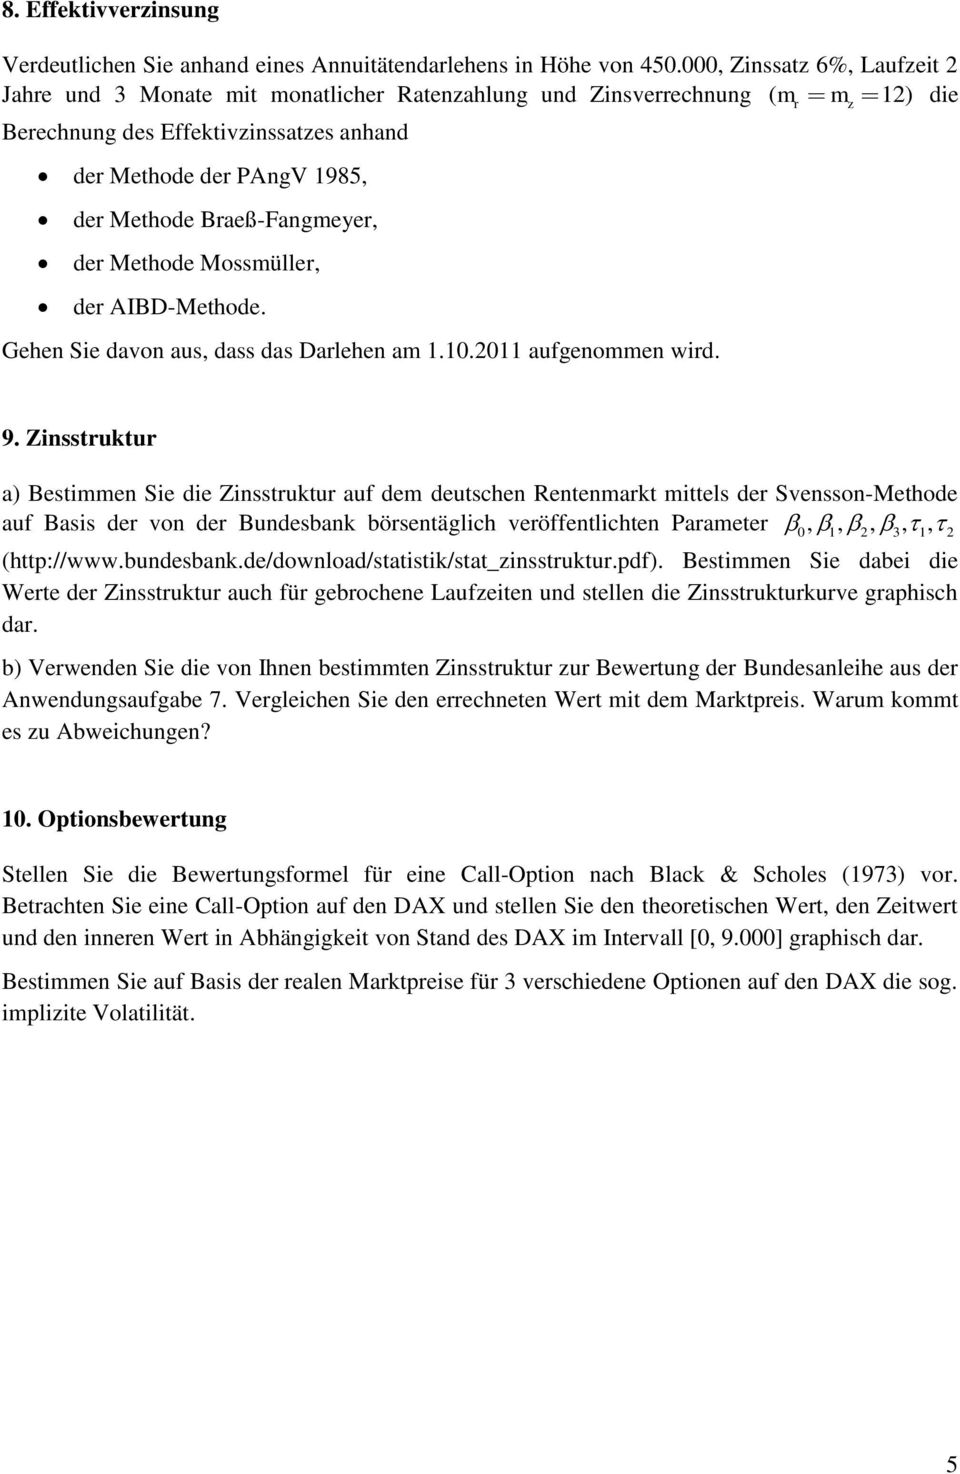 Braeß-Fangmeyer, der Methode Mossmüller, der AIBD-Methode. Gehen Sie davon aus, dass das Darlehen am 1.10.2011 aufgenommen wird. r z 9.